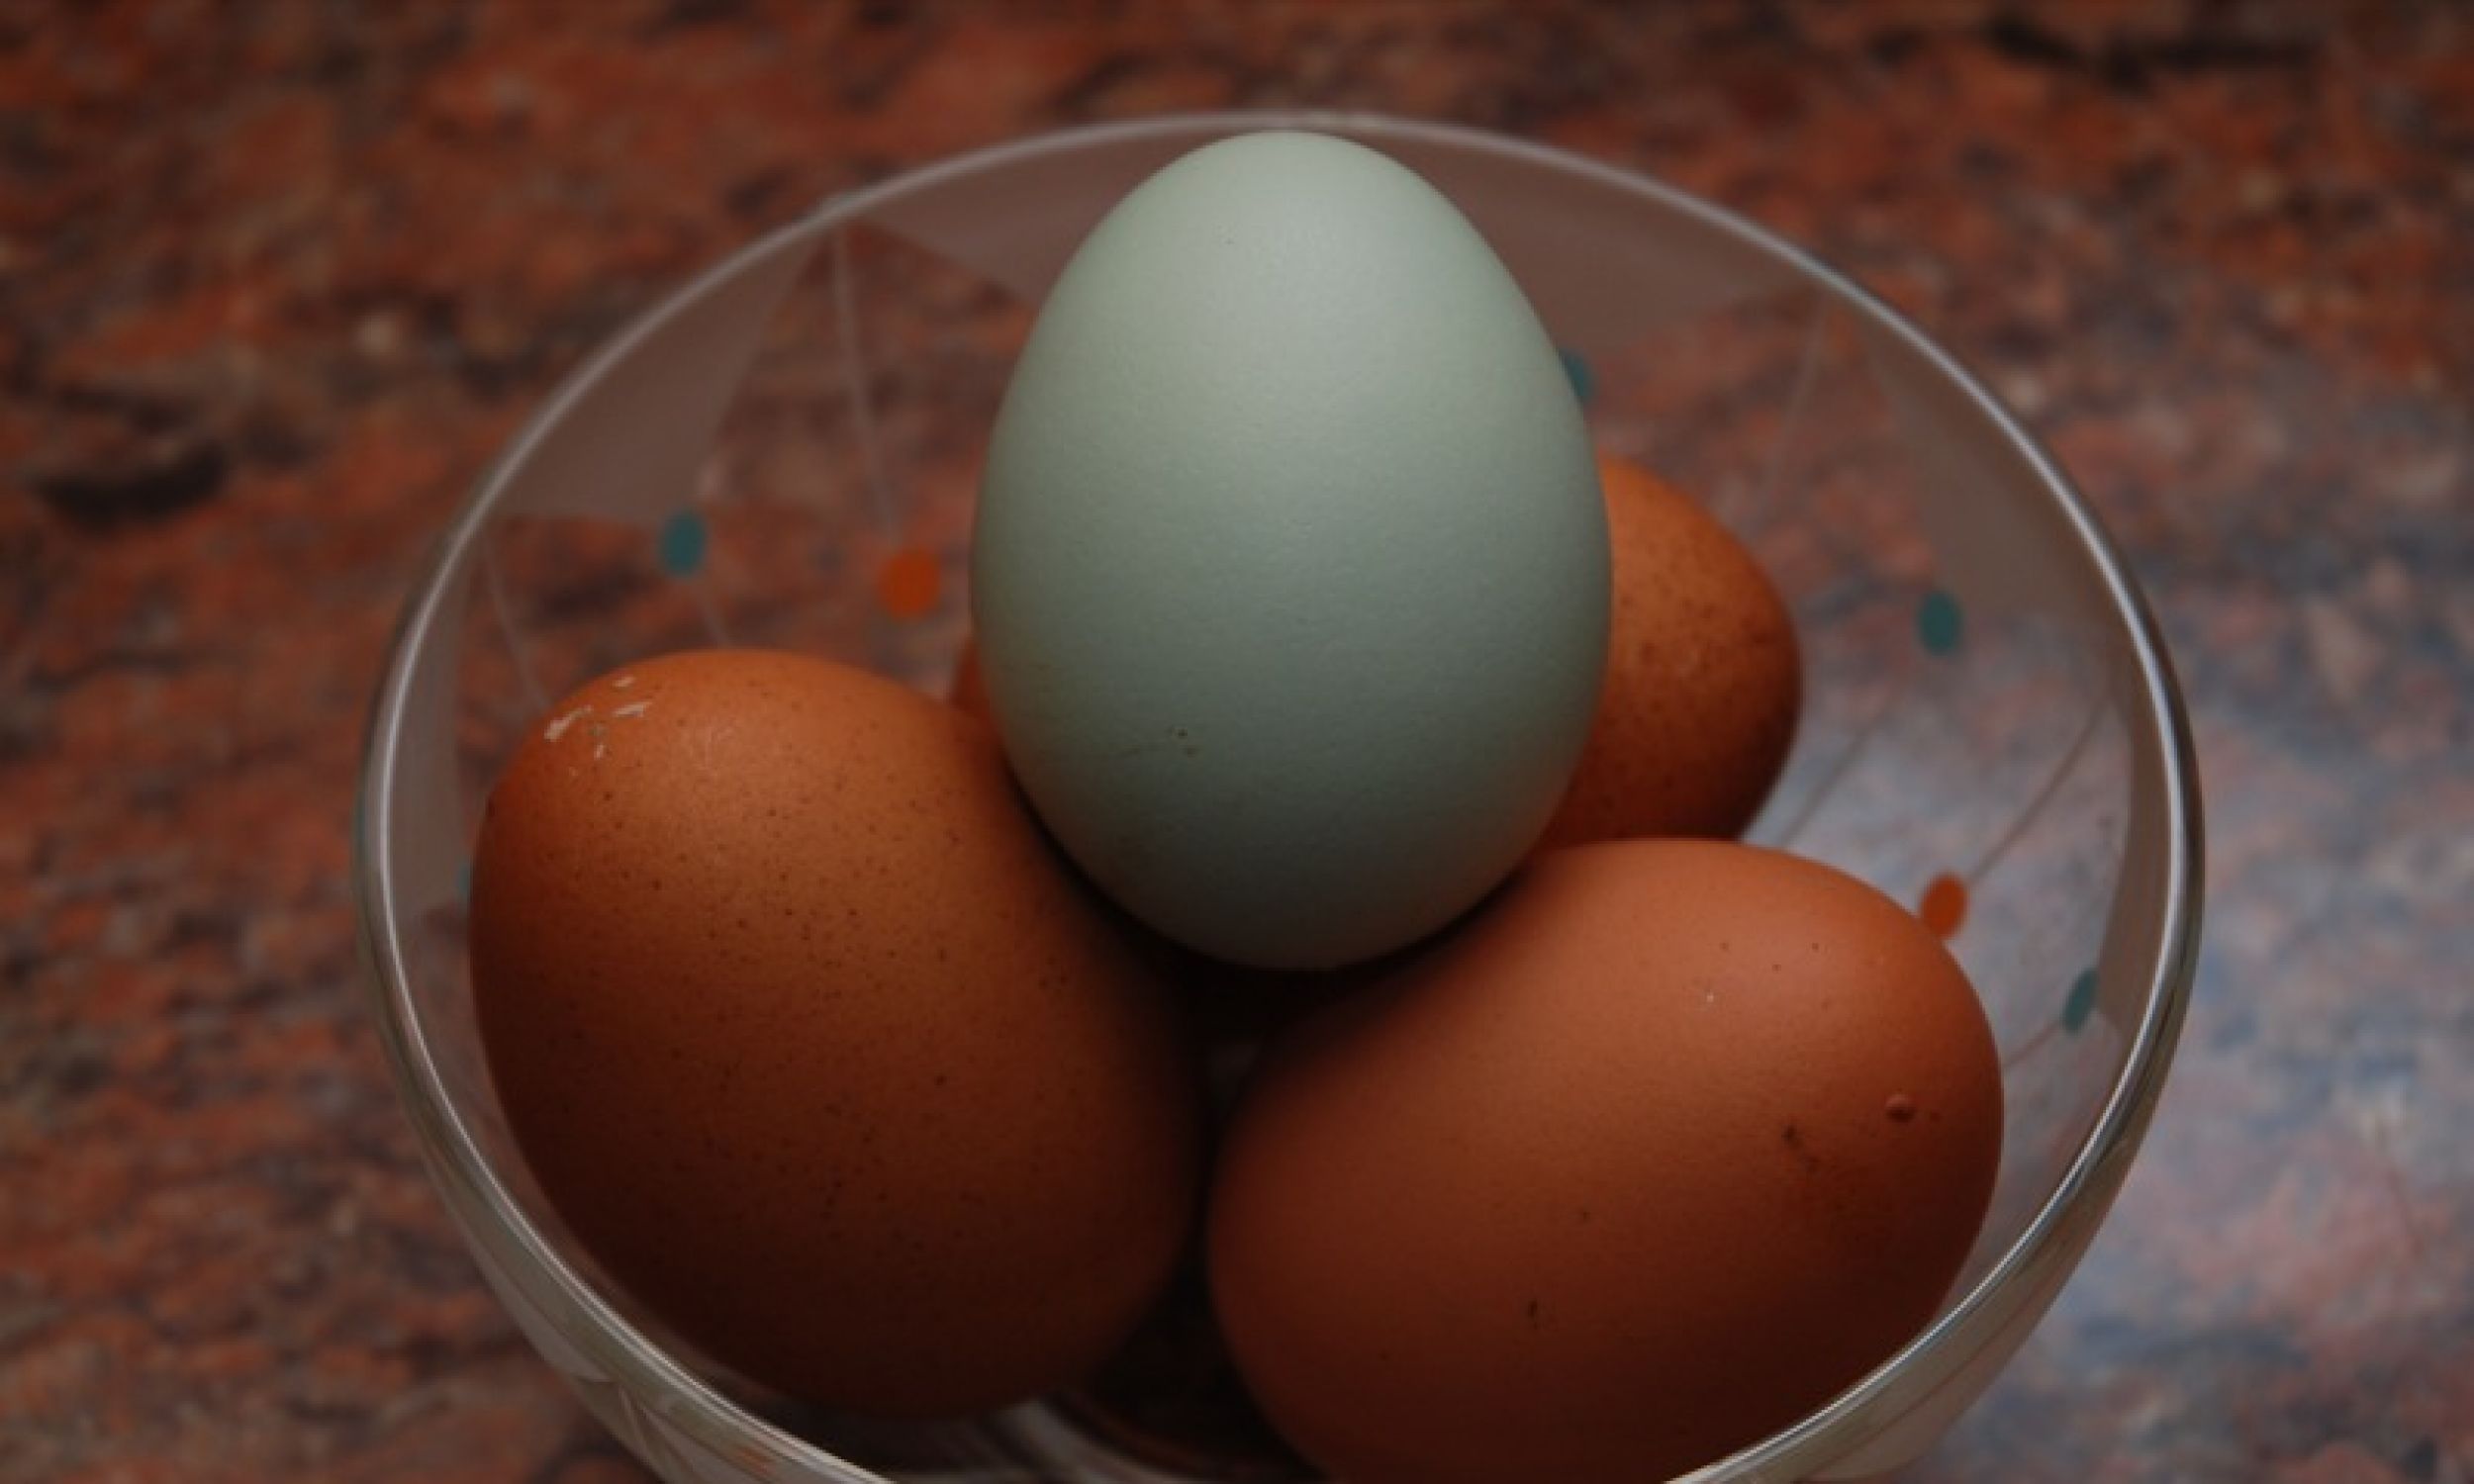 Блакитне яйце, знесене куркою араукан, на коричневих яйцях, пофарбованих в цибулинні. Фото Par Julian Berry z Mid Sussex, UK – Lavender Araucana, CC BY-SA 2.0, Wikimedia